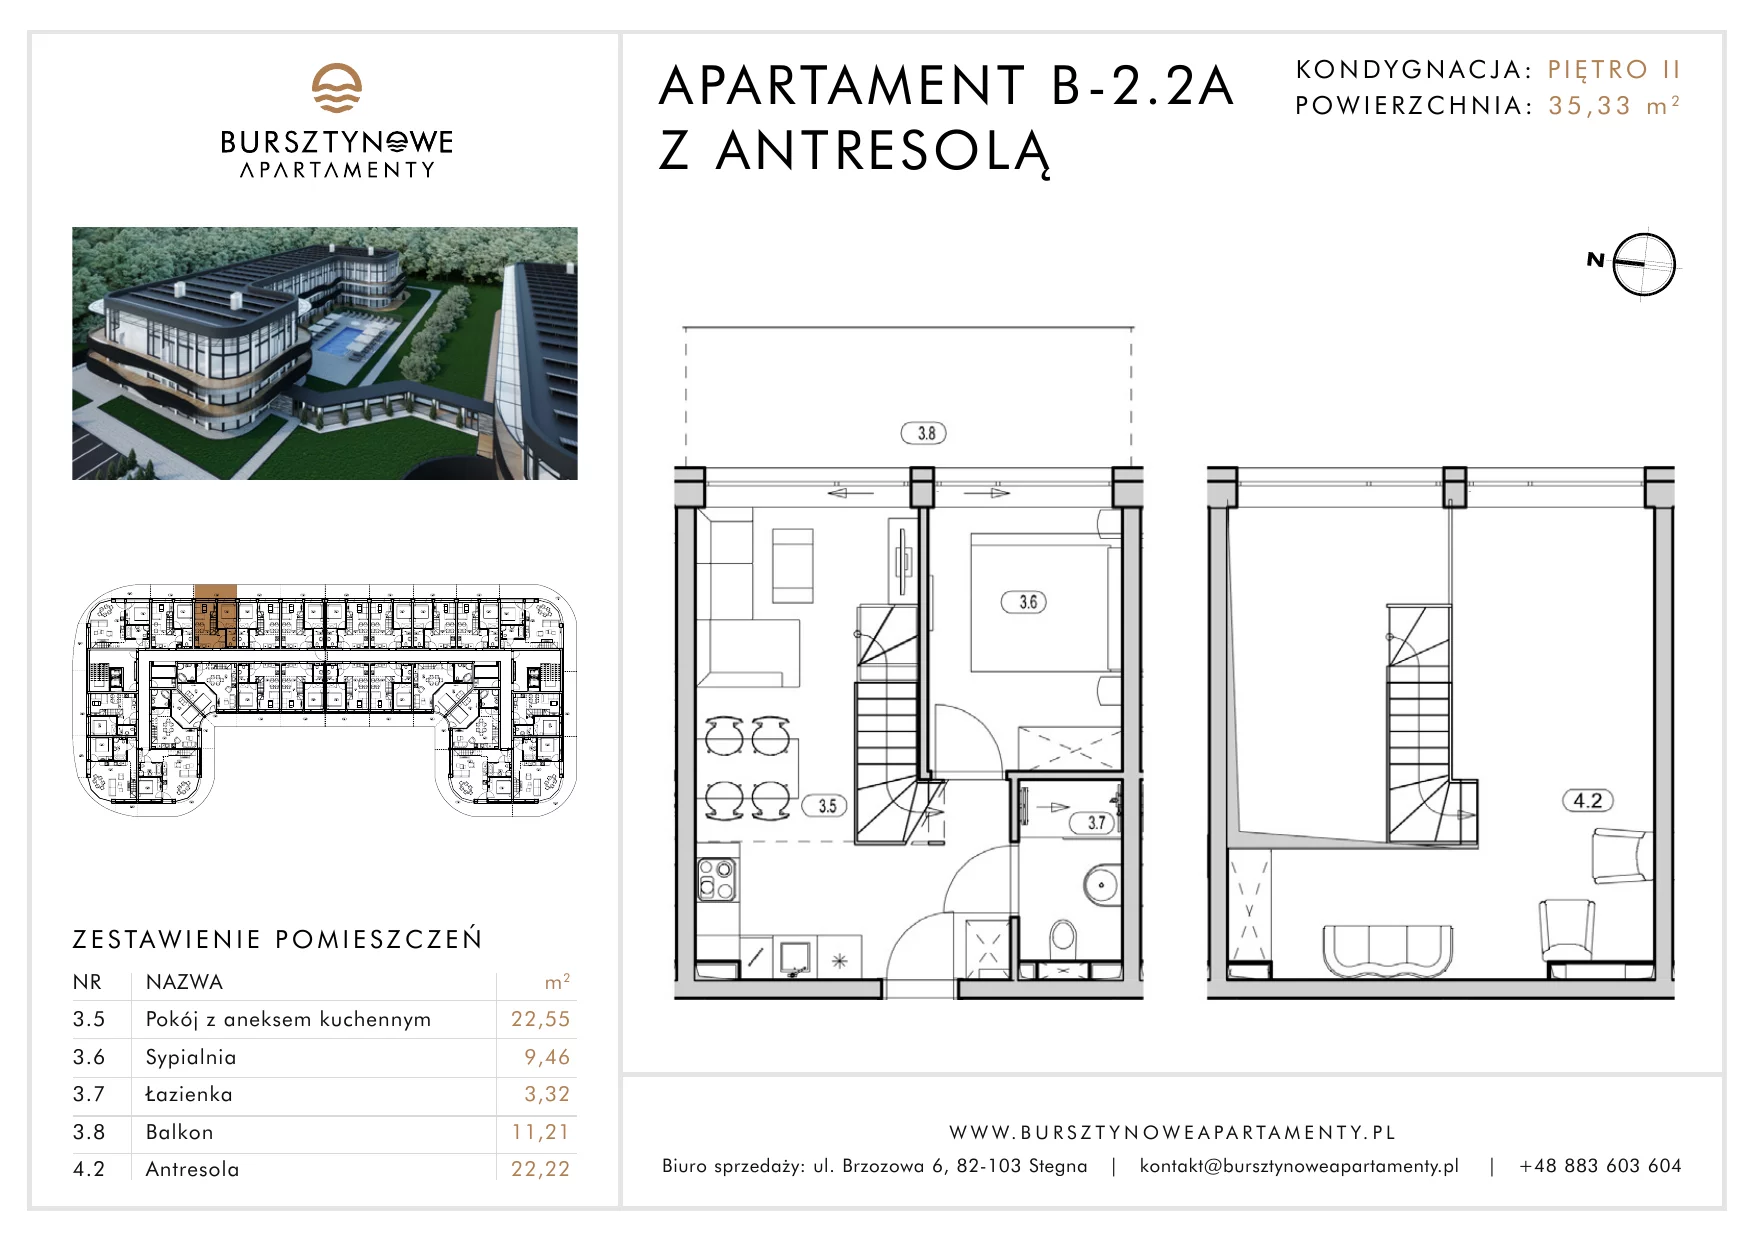 Apartament inwestycyjny 35,33 m², piętro 2, oferta nr B-2.2A, Bursztynowe Apartamenty, Stegna, ul. Brzozowa 6